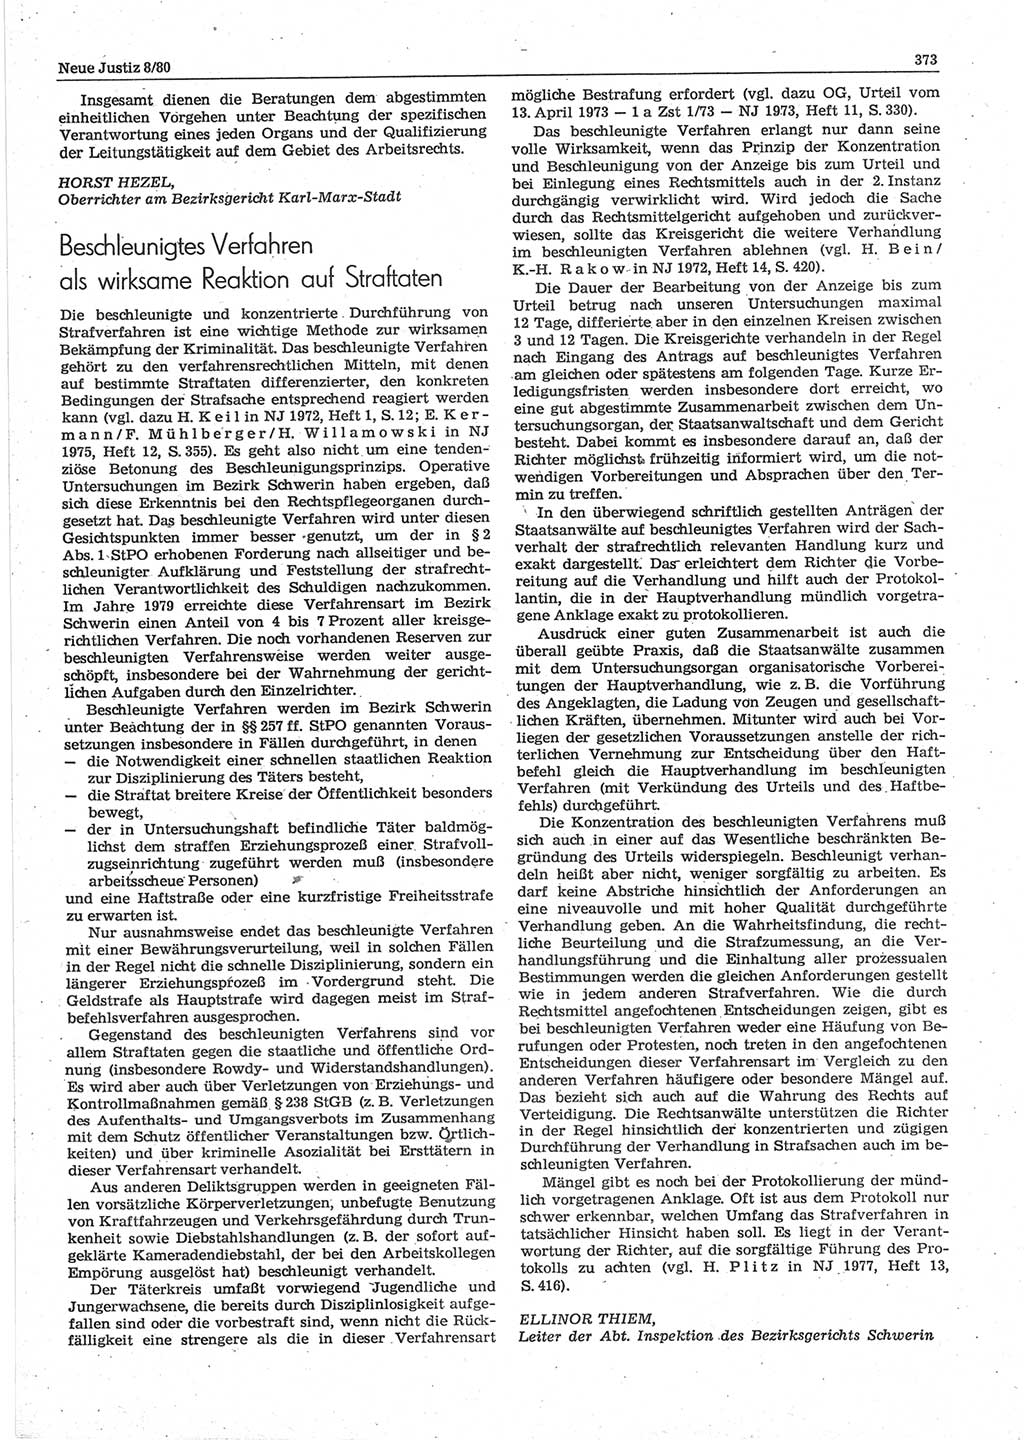 Neue Justiz (NJ), Zeitschrift für sozialistisches Recht und Gesetzlichkeit [Deutsche Demokratische Republik (DDR)], 34. Jahrgang 1980, Seite 373 (NJ DDR 1980, S. 373)